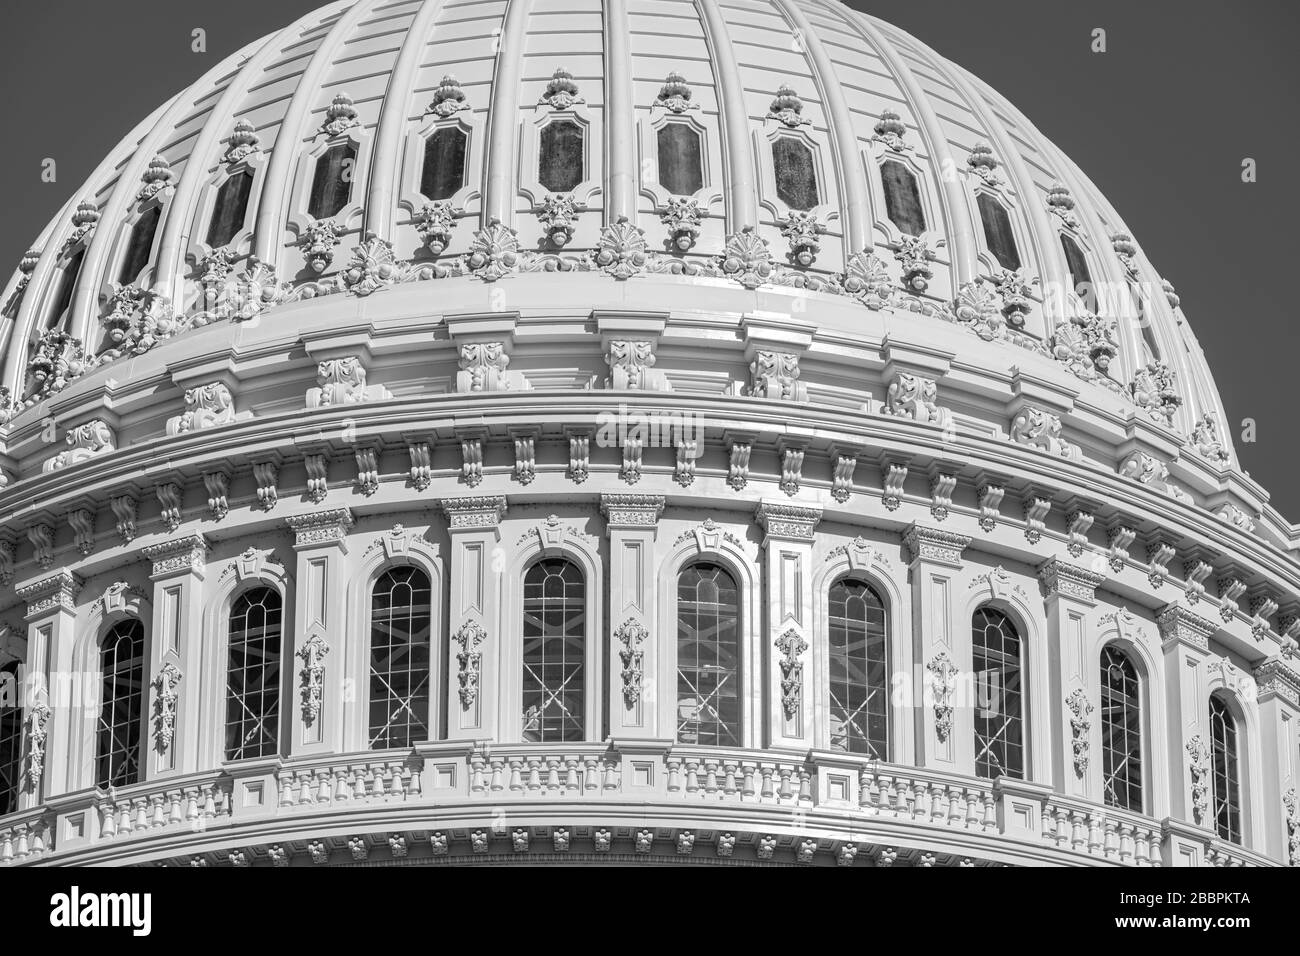 Le magnifique dôme en fonte du Capitole américain de Thomas U. Walter s'élève à 288' au-dessus de Capitol Hill à Washington DC Banque D'Images